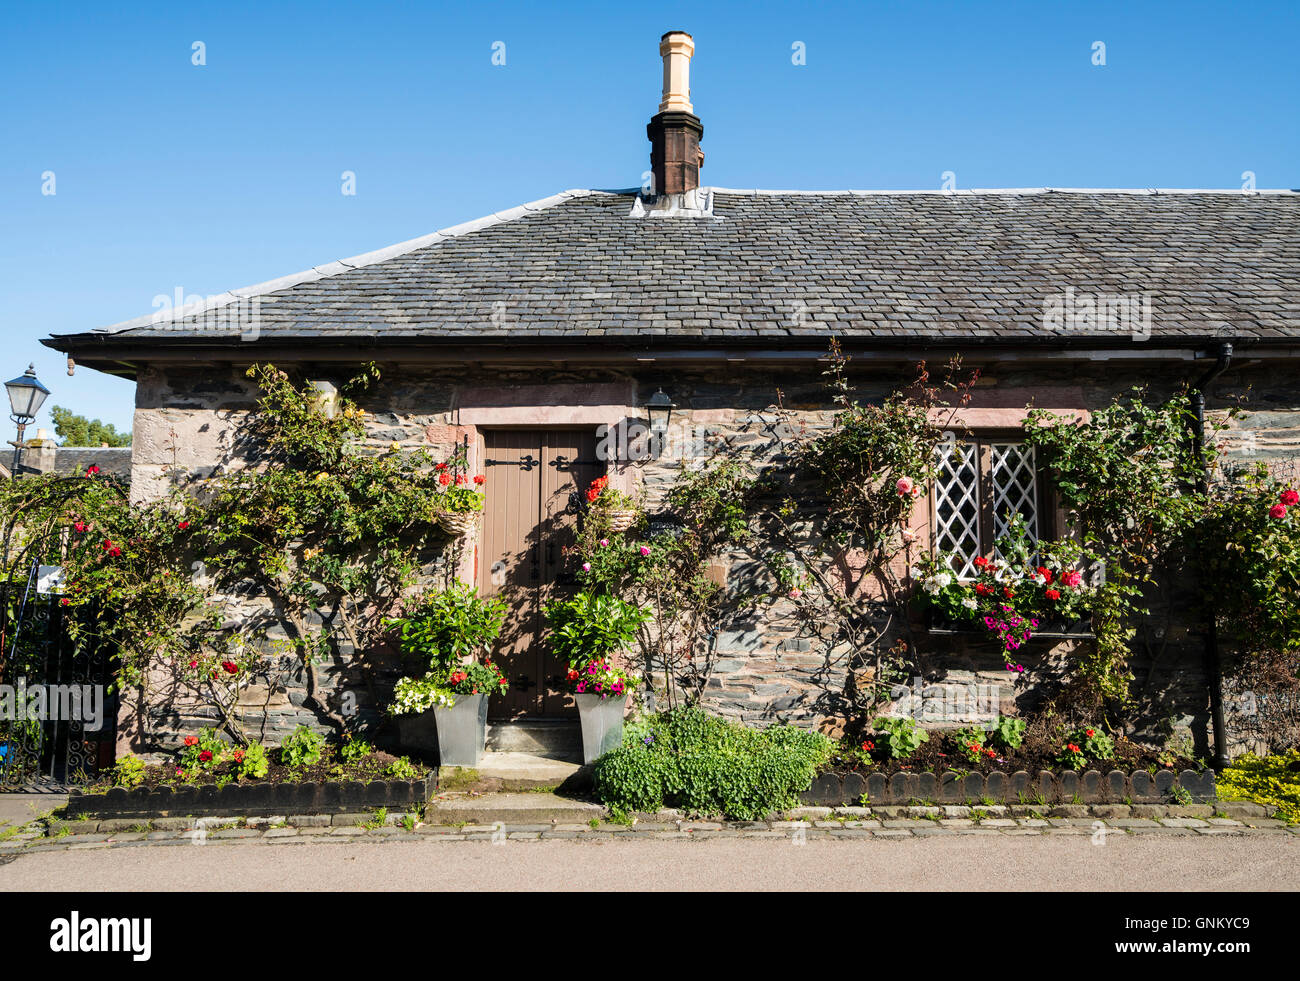 Vieux traditionnels cottages dans village historique de Luss sur les rives du Loch, Loomnd à Argyll and Bute, Ecosse, Royaume-Uni Banque D'Images